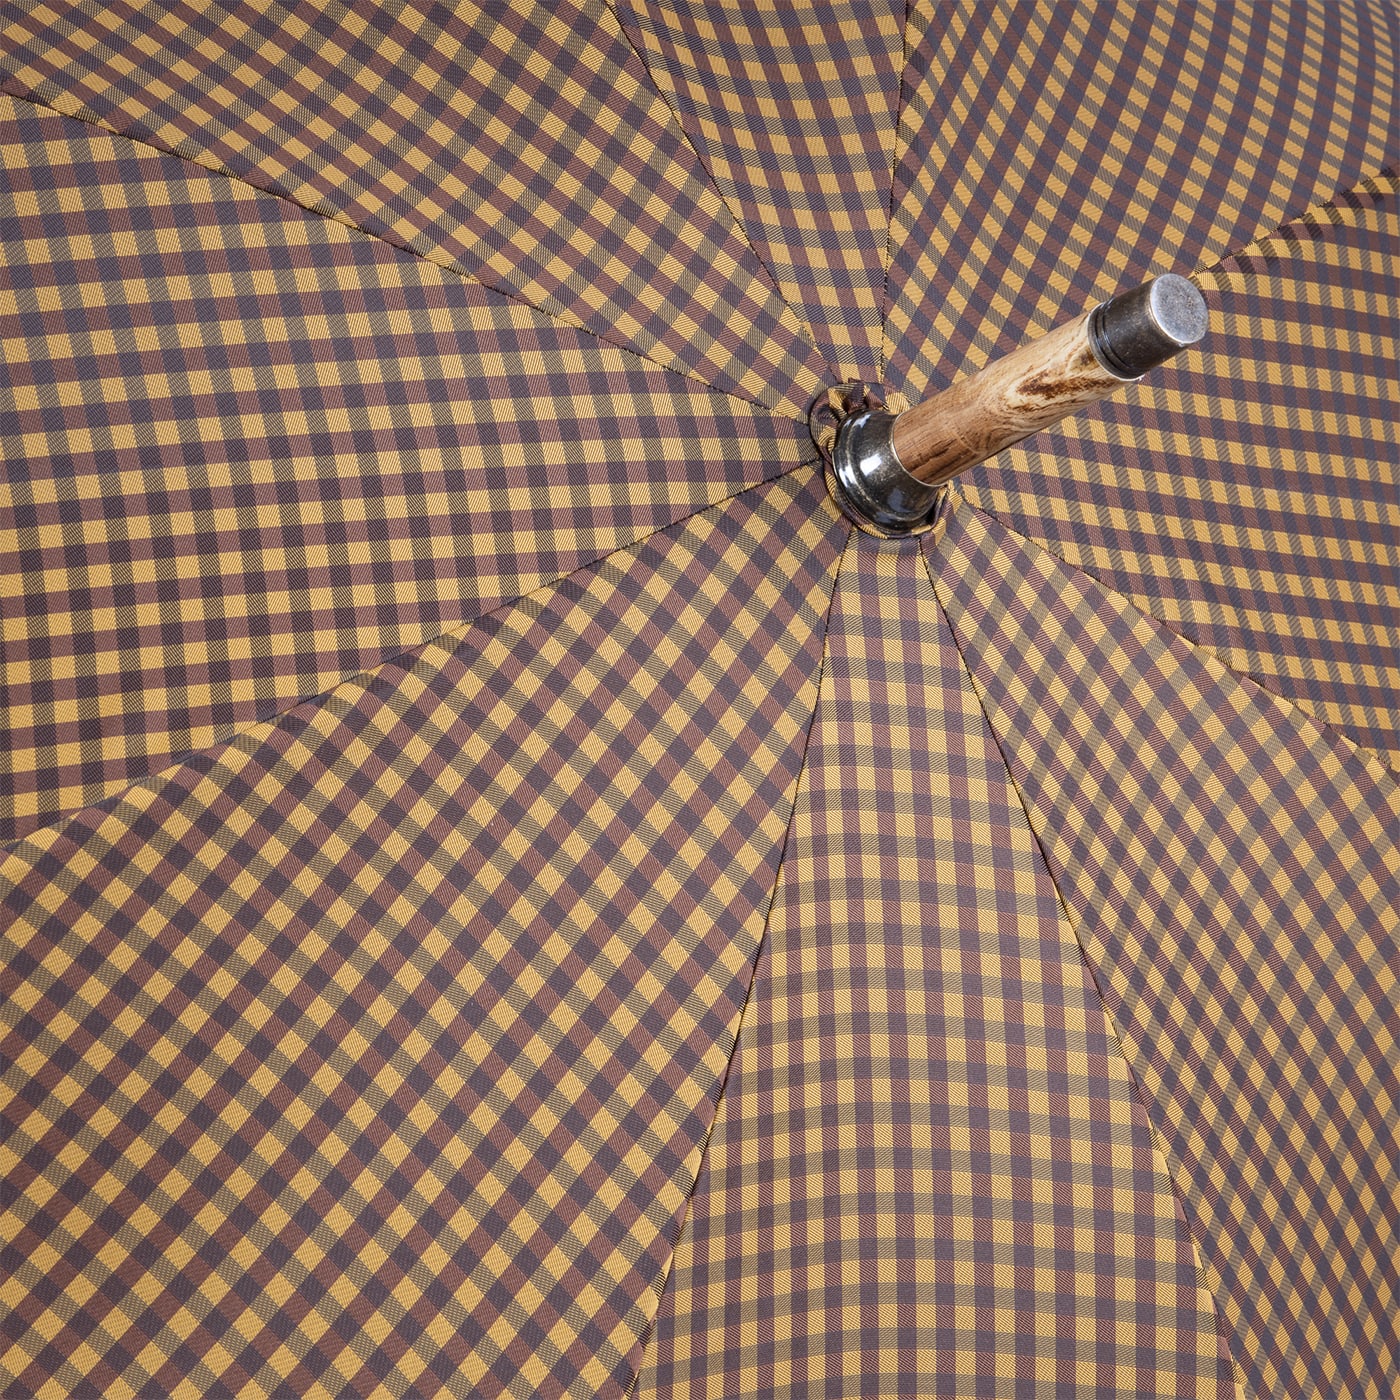 Yellow and Brown Umbrella - Francesco Maglia Milano